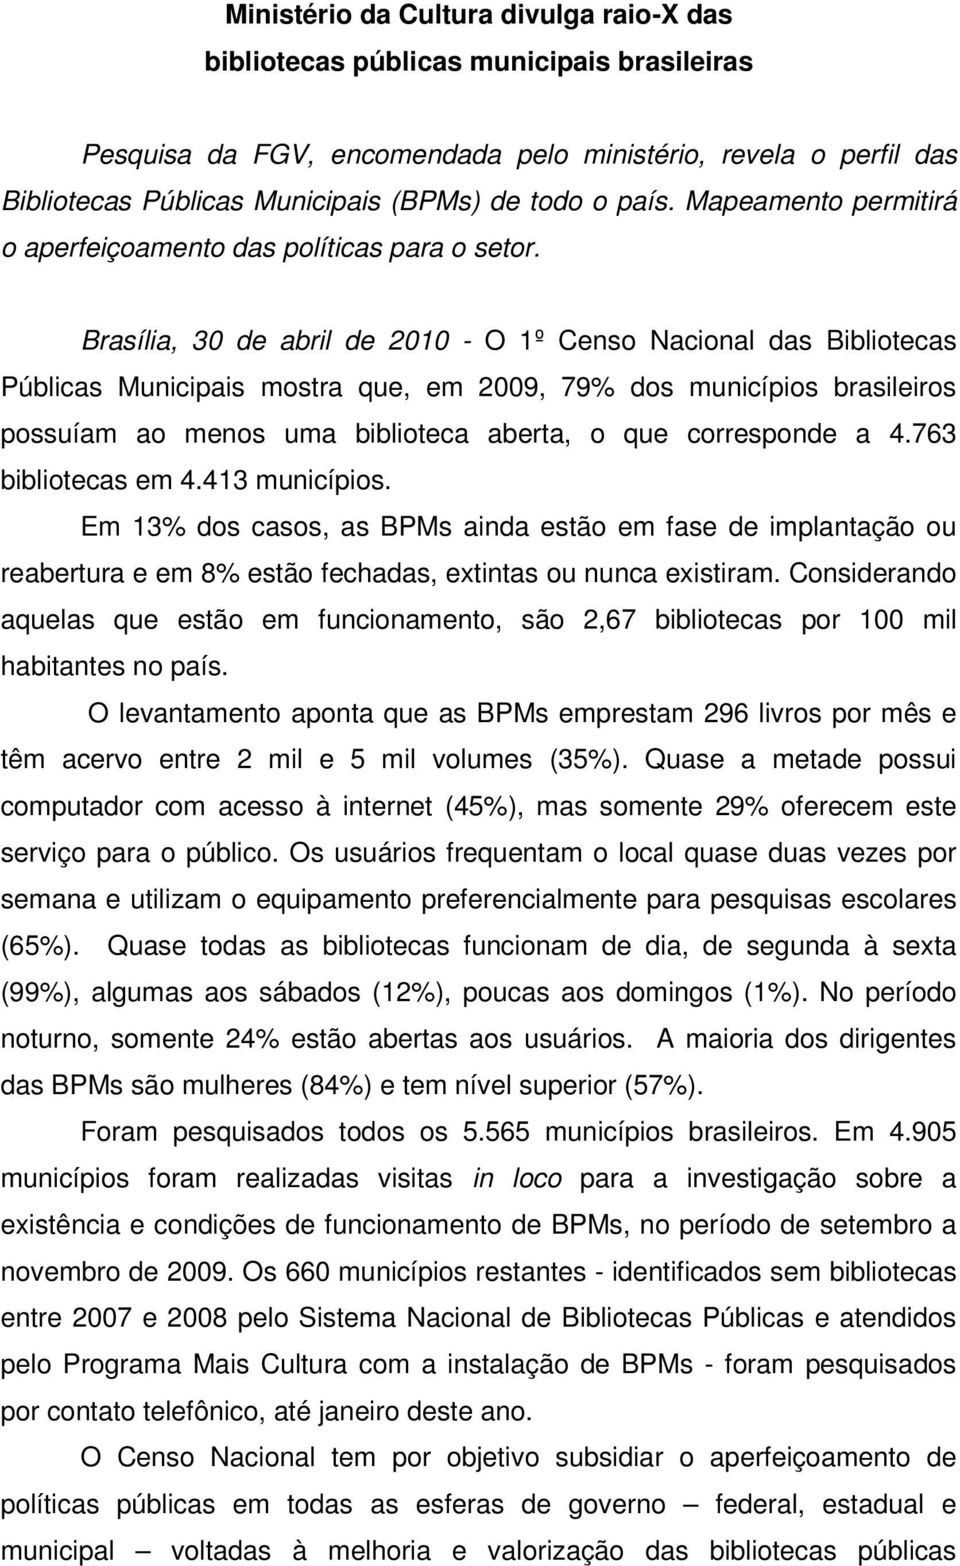 Brasília, 30 de abril de 2010 - O 1º Censo Nacional das Bibliotecas Públicas Municipais mostra que, em 2009, 79% dos municípios brasileiros possuíam ao menos uma biblioteca aberta, o que corresponde